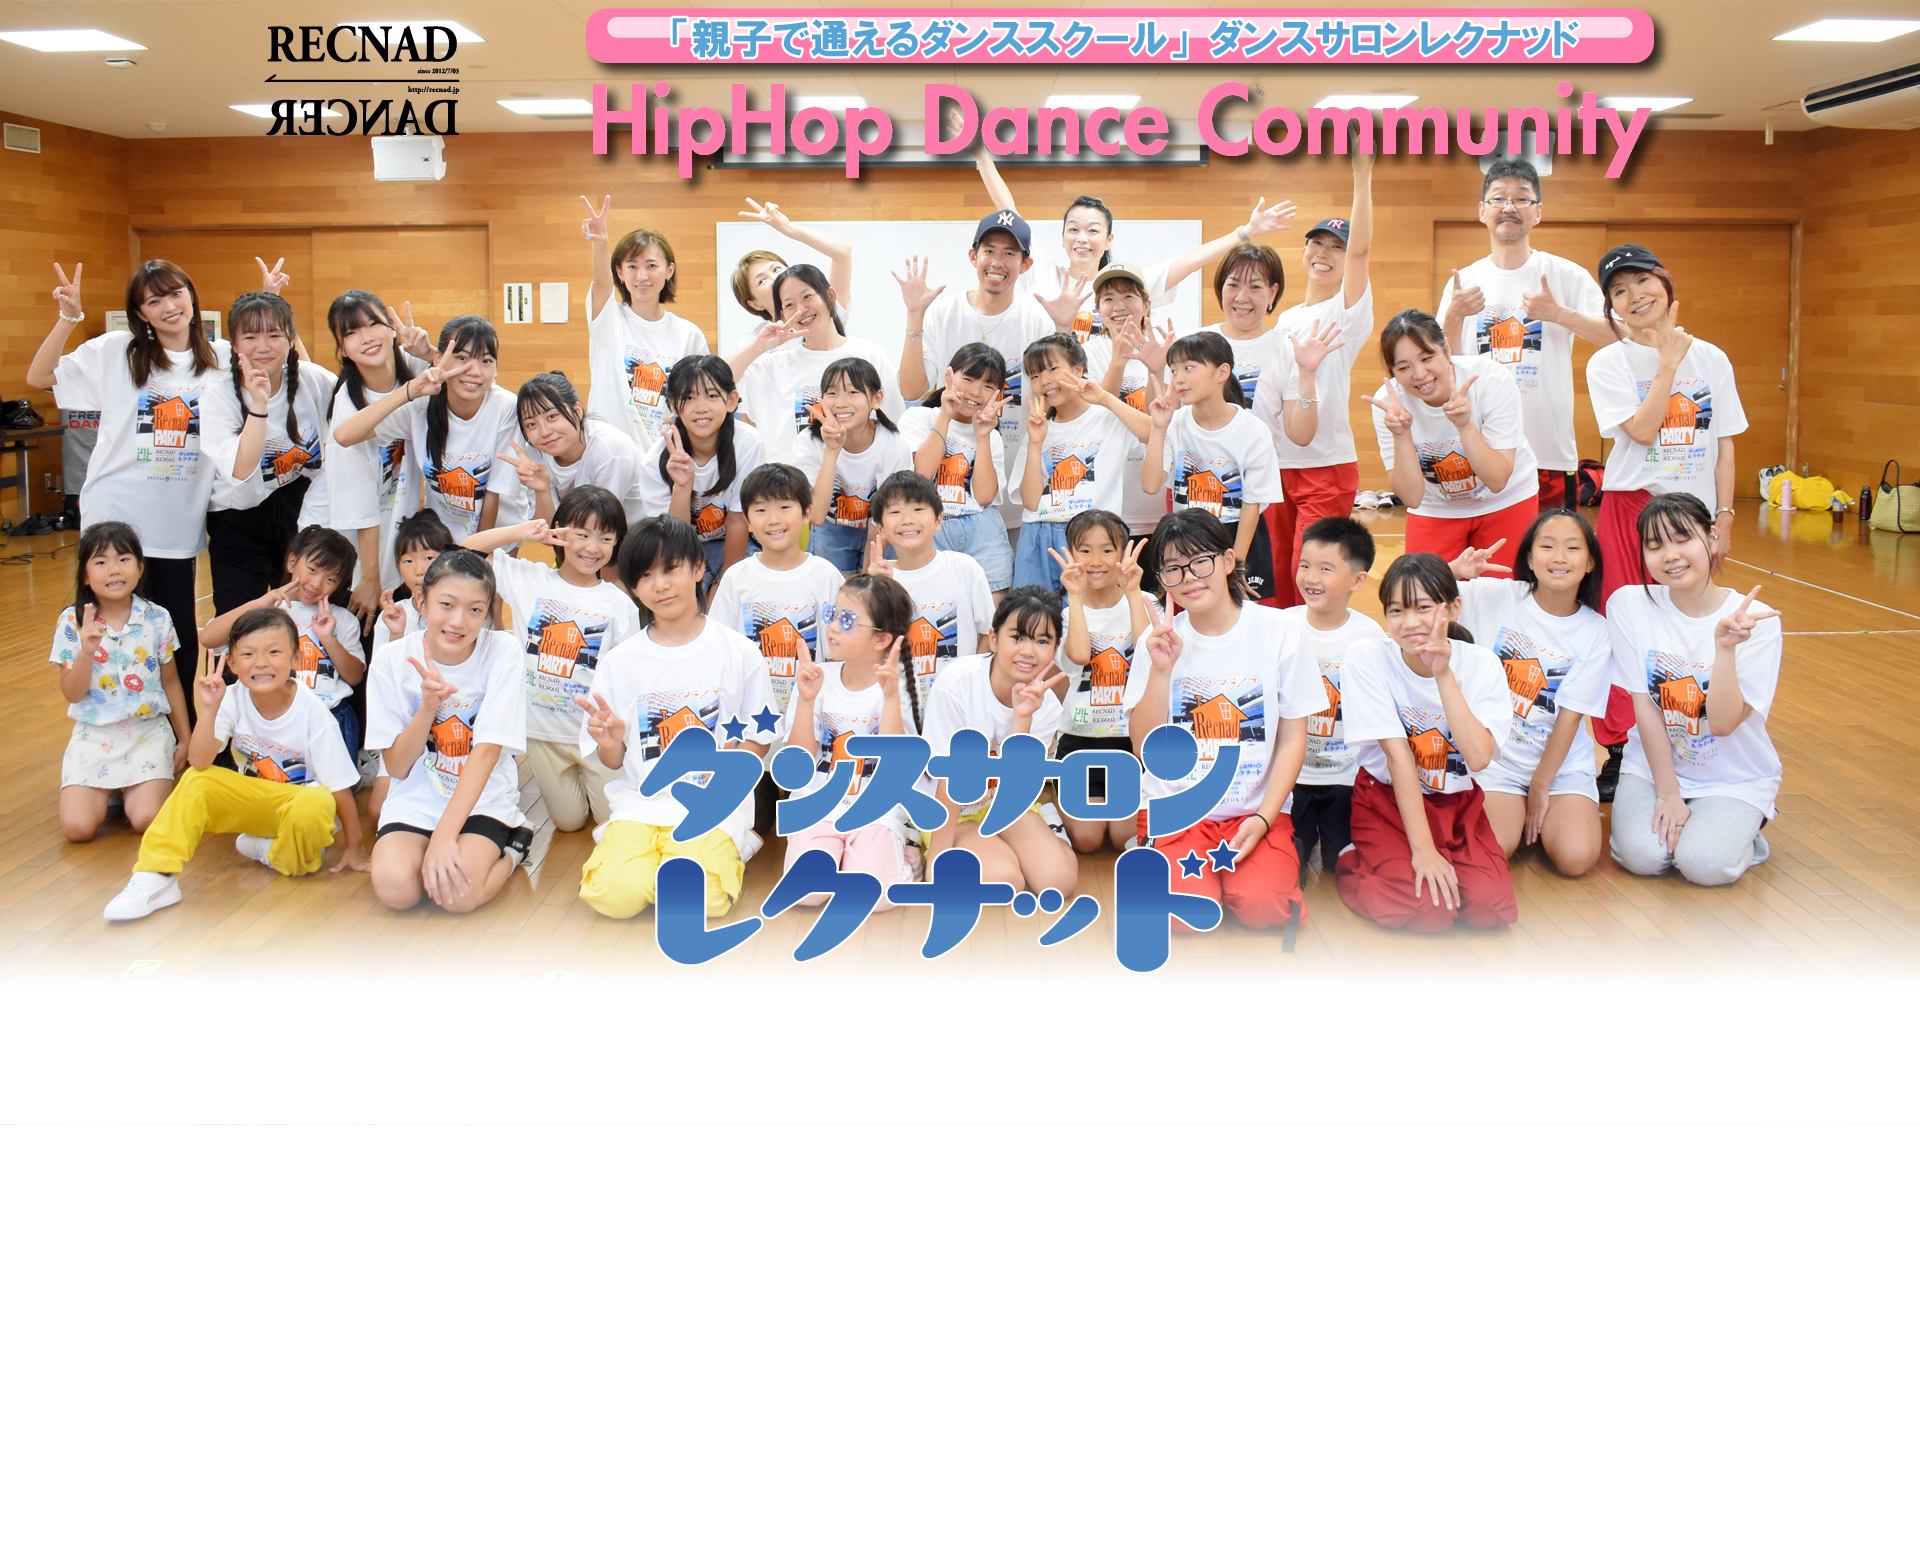 活動5年「親子で通えるダンススクール」| 品川区 ダンスサロンレクナッド